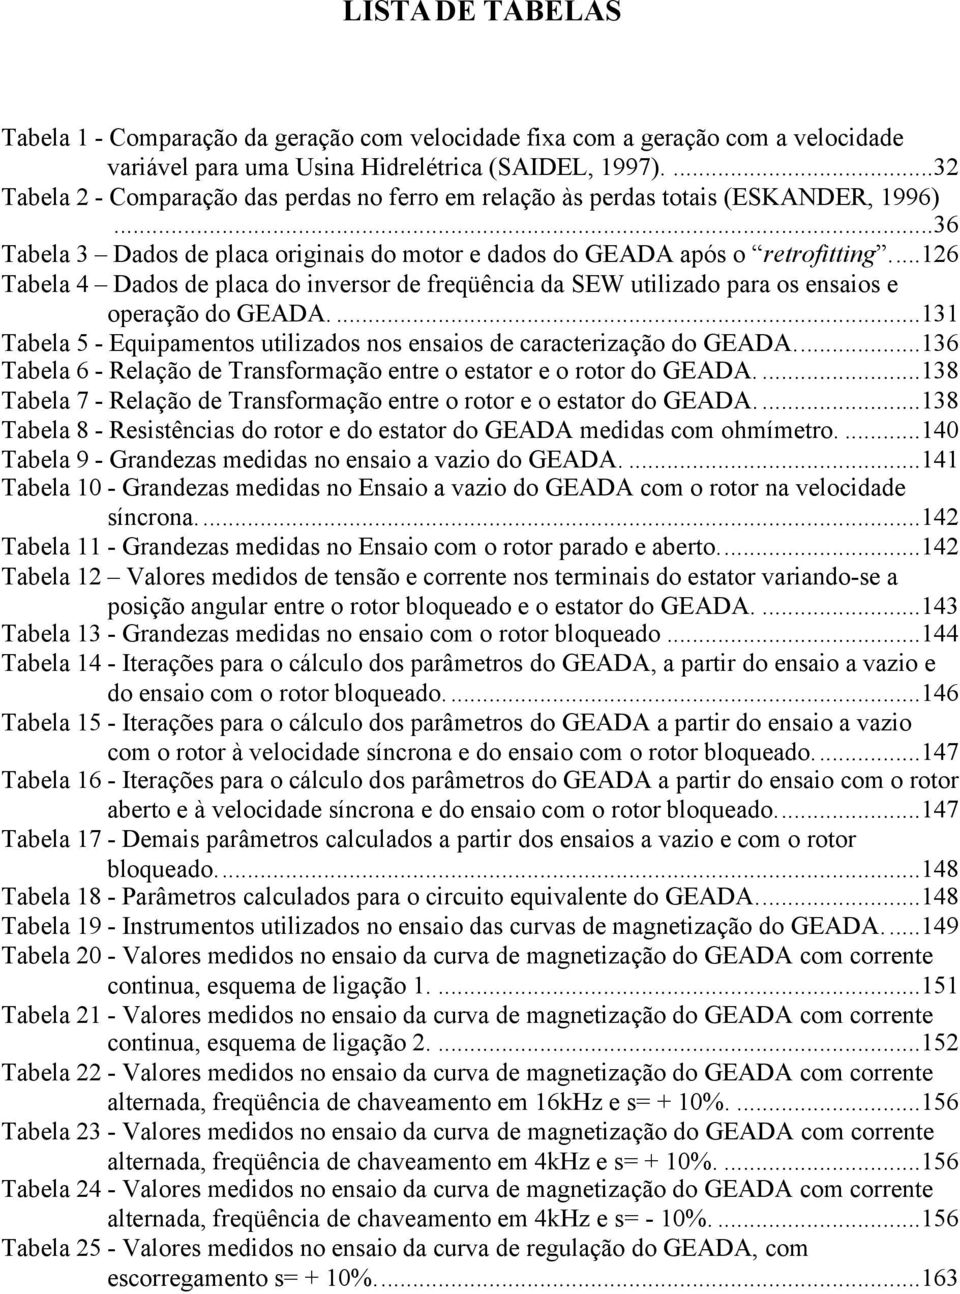 ..16 Tabela 4 Dado de placa do inveror de freqüência da SEW utilizado para o enaio e operação do GEADA....131 Tabela 5 - Equipamento utilizado no enaio de caracterização do GEADA.